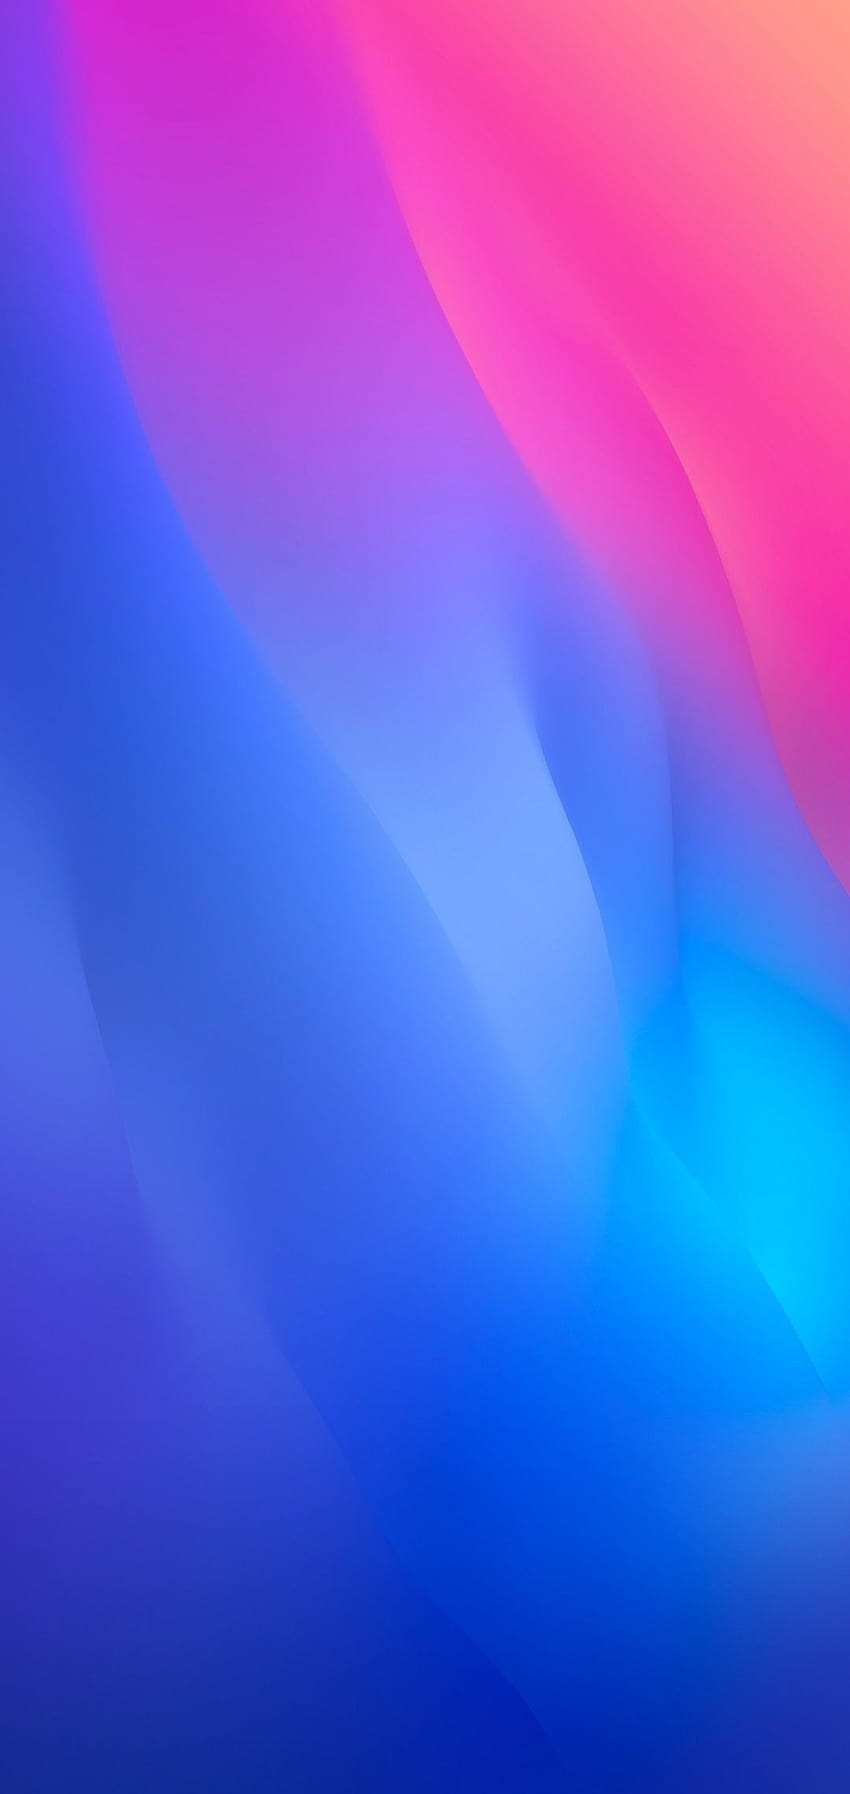 iOS 12, iPhone X, blau, pink, sauber, einfach, abstrakt, Apfel, iPhone 8, sauber, schön, farbig, mobile Farbe HD-Handy-Hintergrundbild